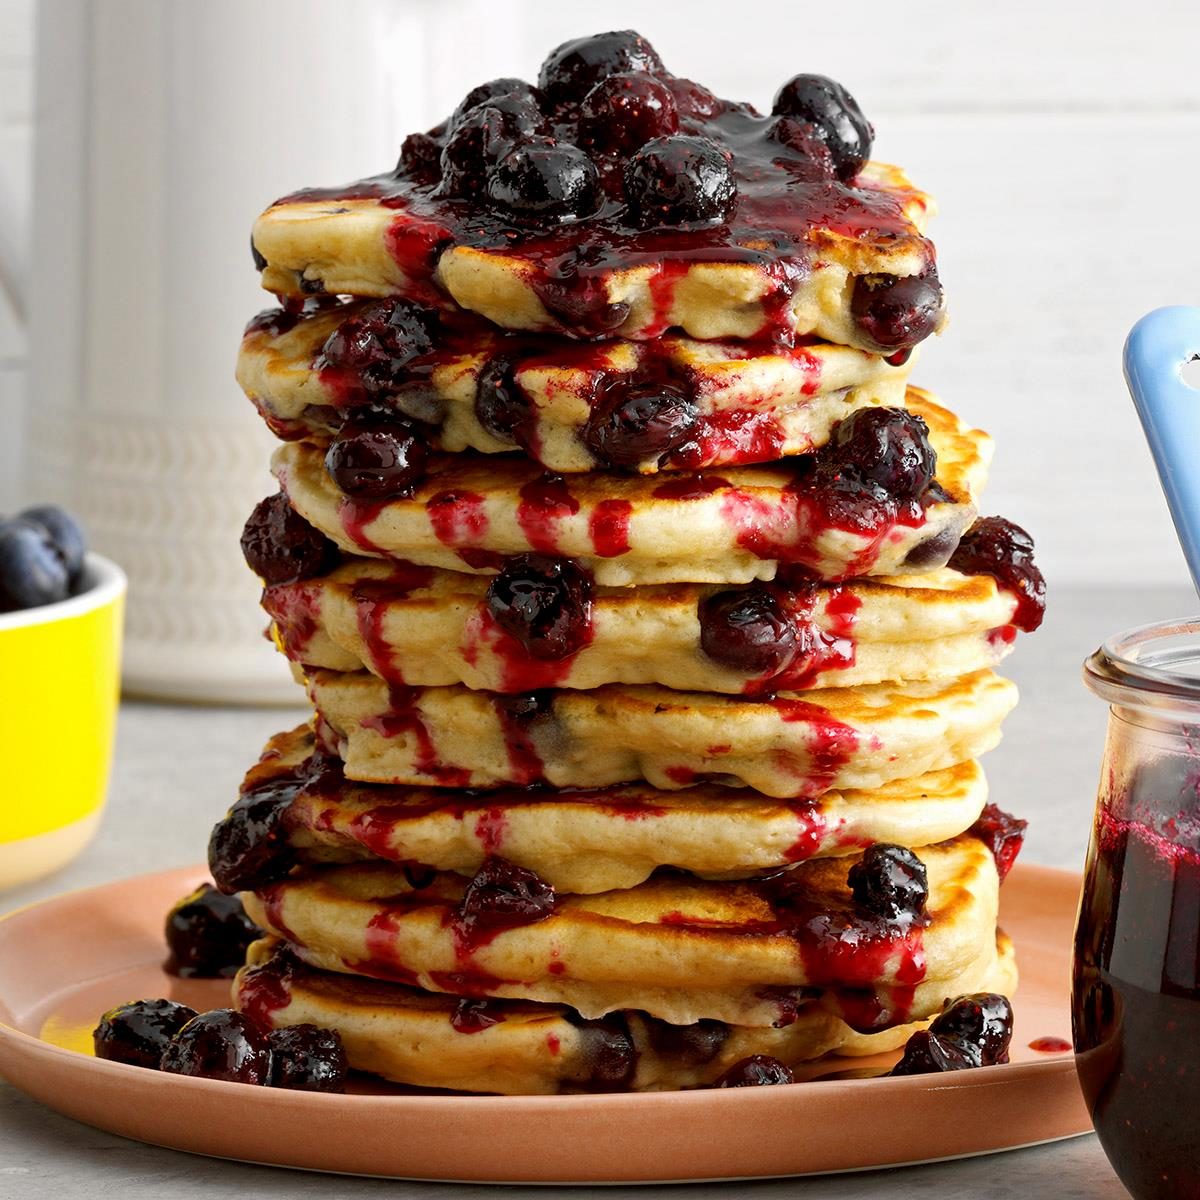 https://www.tasteofhome.com/wp-content/uploads/2018/01/Blueberry-Oatmeal-Pancakes_EXPS_TOHAM22_35109_B11_12_4b.jpg